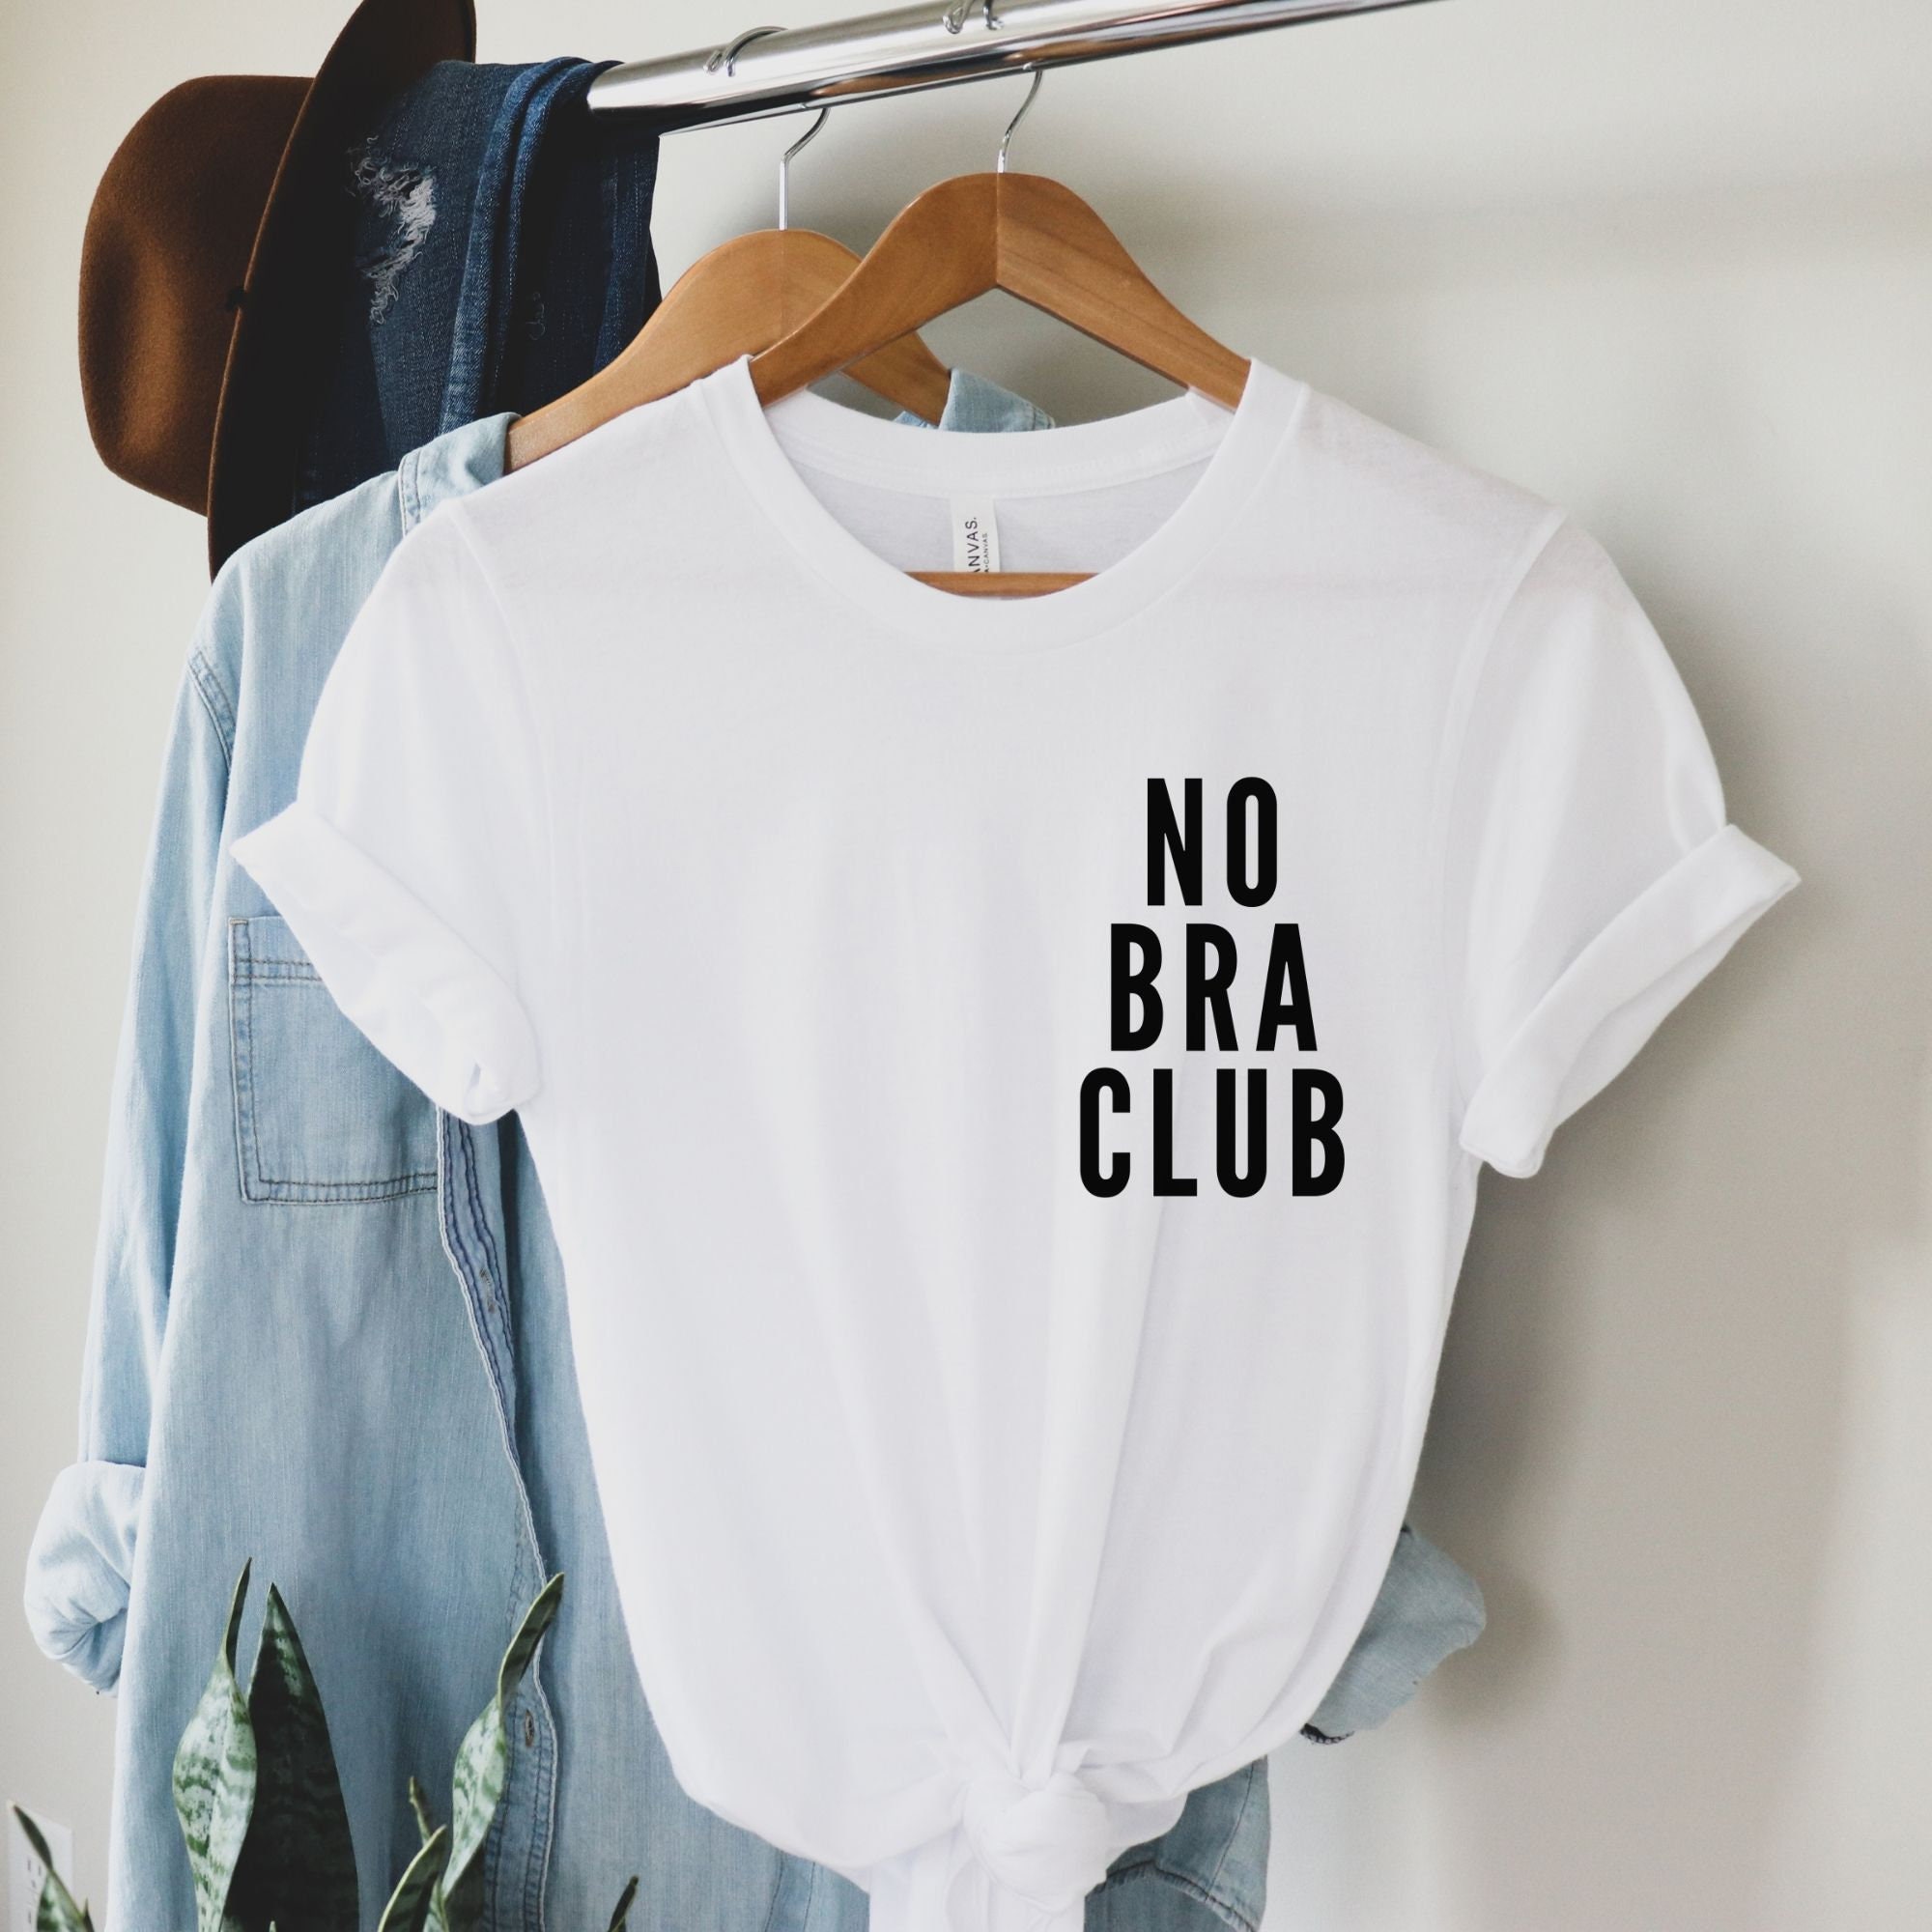 No Bra Club Shirt, No Bra Shirt, No Bra Club Tshirt, No Bra T Shirt, Feminist  Shirt, Funny Feminist Gift, Feminism Shirt, Girl Power Shirt 